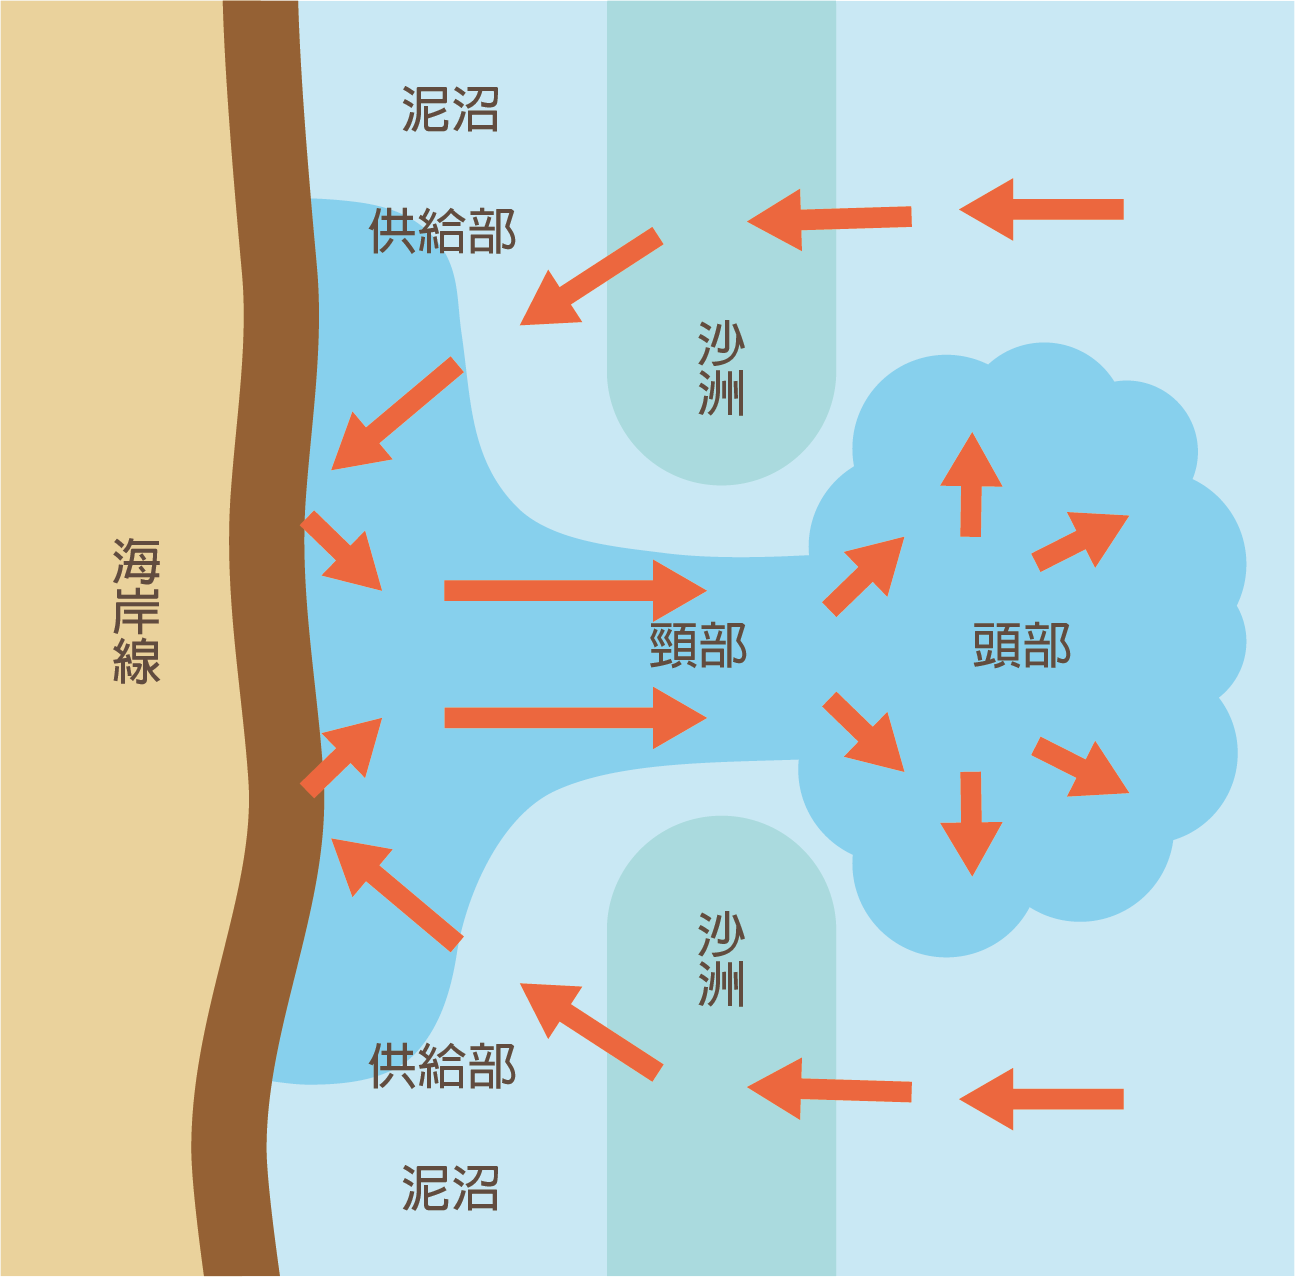 離岸流流速分佈呈現蕈狀，分為供給部、頸部、跟頭部。供給部提供離岸流水的來源；頸部的流幅狹窄且流速最快；頭部由於流域變開闊而流速減慢